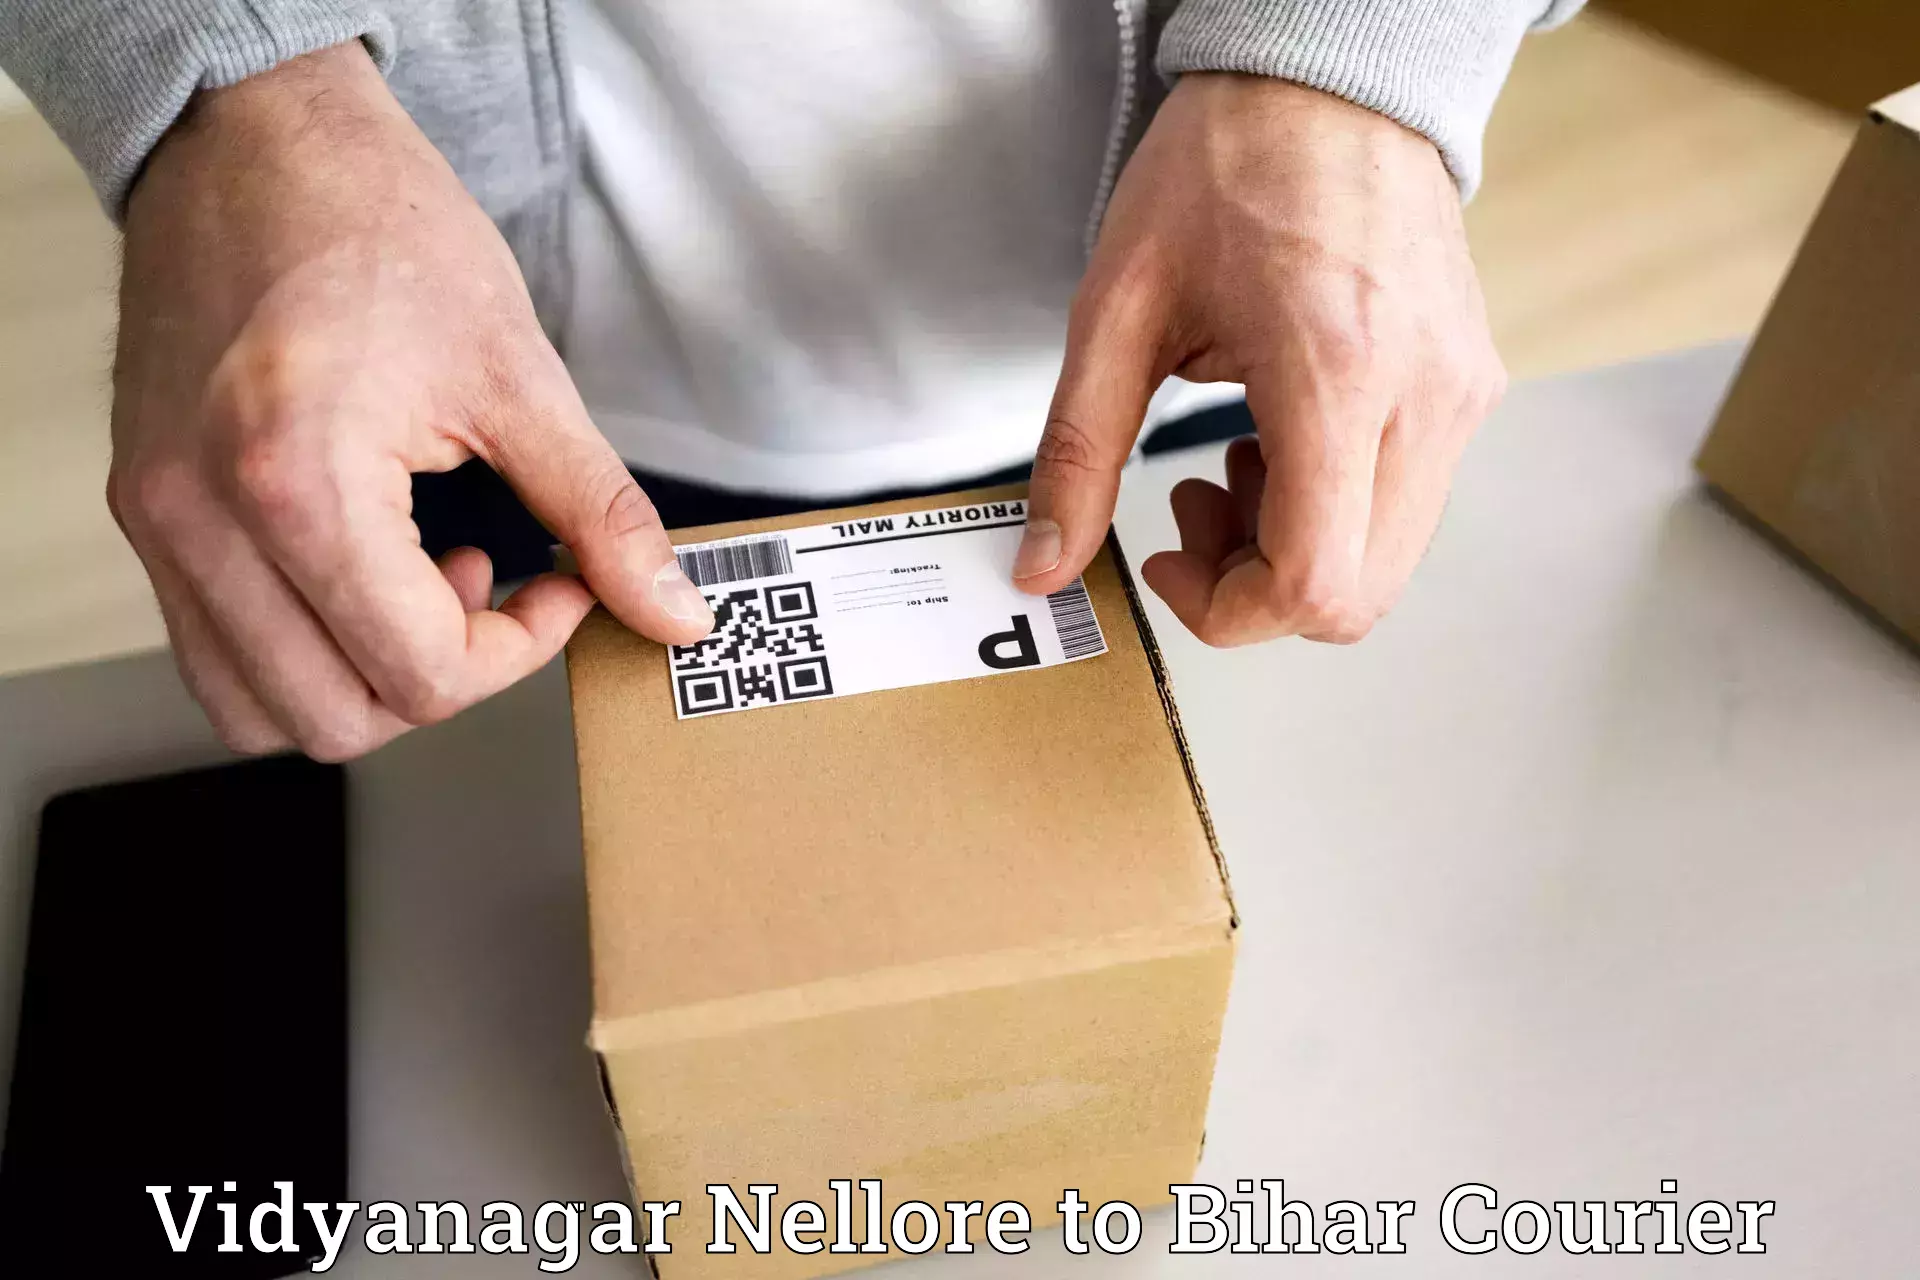 Lightweight courier Vidyanagar Nellore to Sheohar